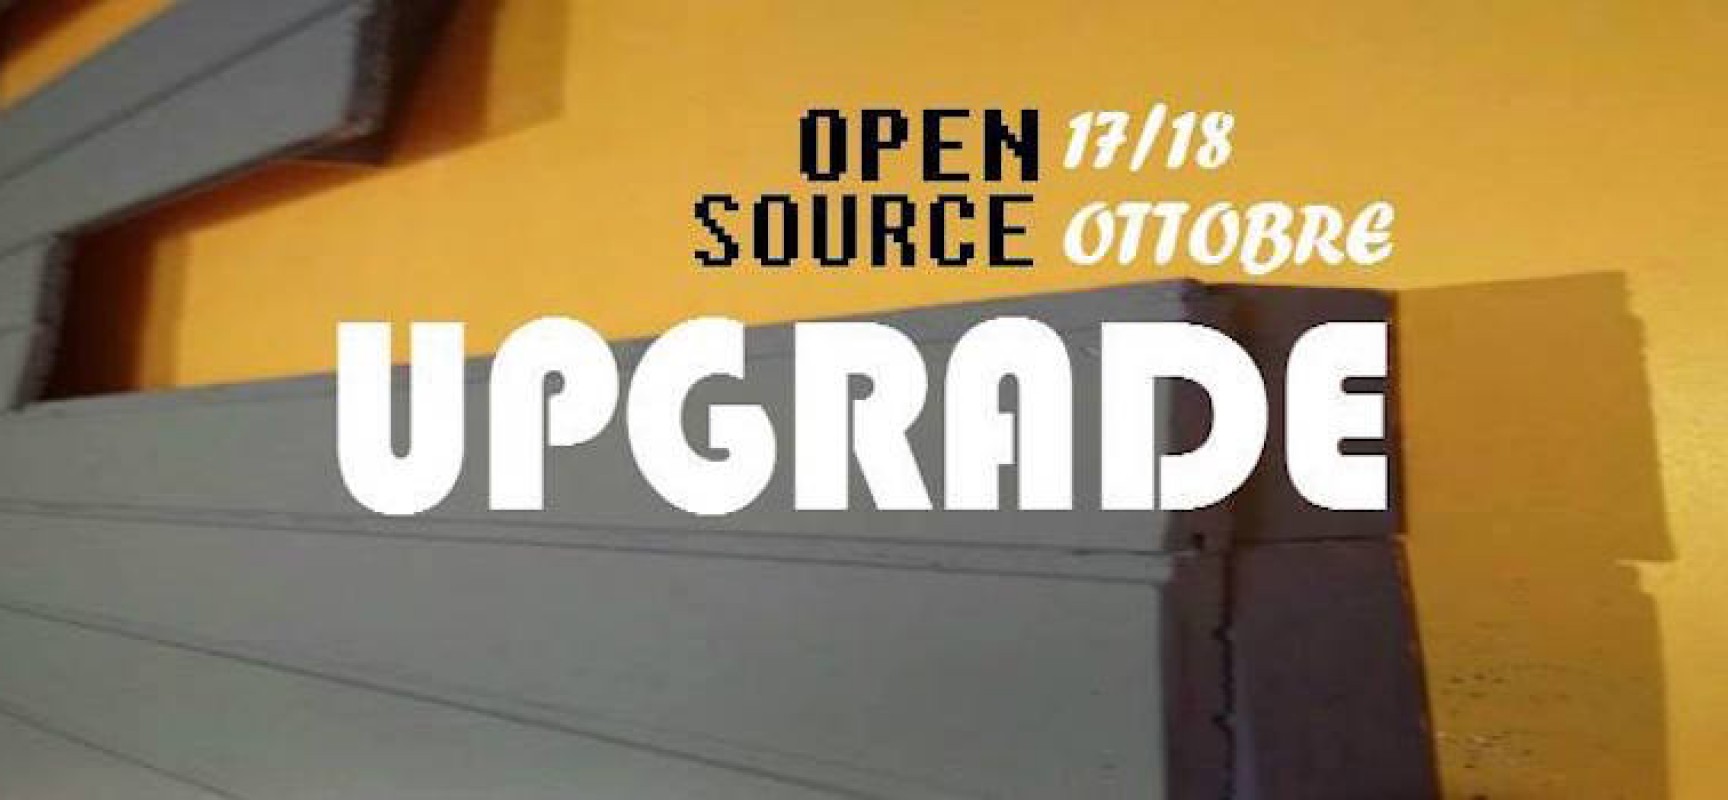 Open Source Upgrade, partono i festeggiamenti per il “restyling” del circolo